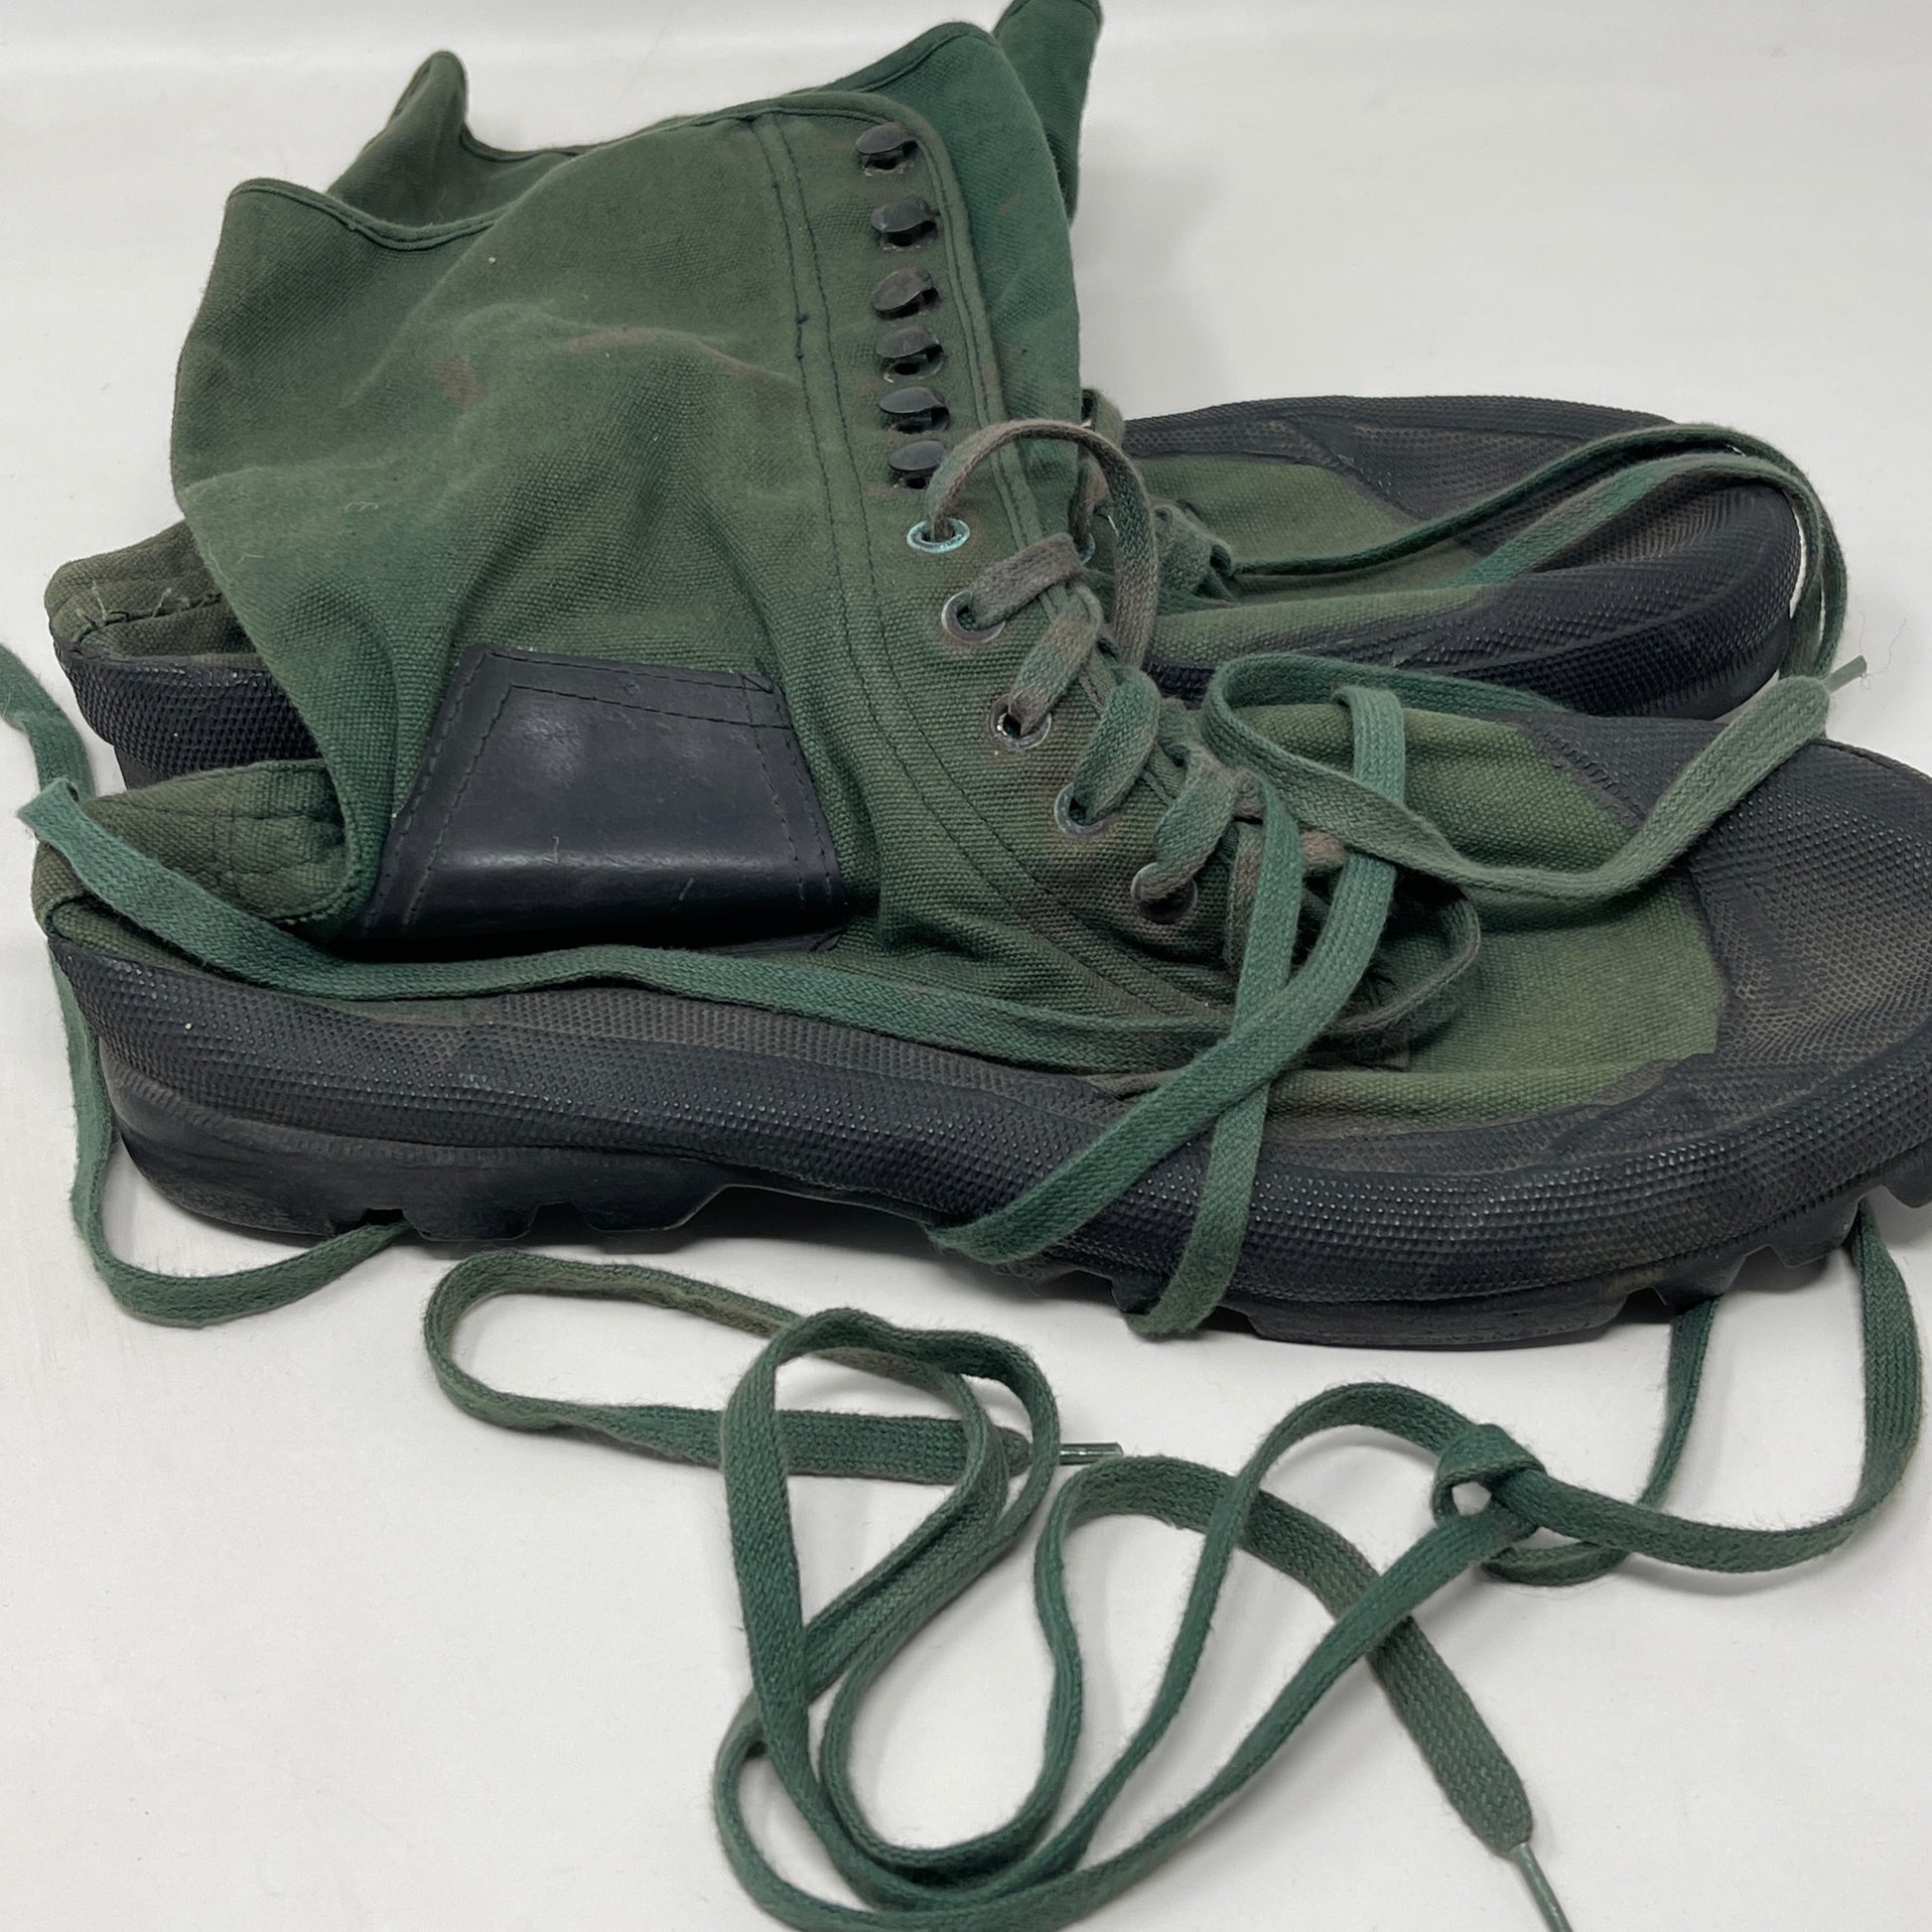 Size 7 1944 Pattern British Jungle Boots